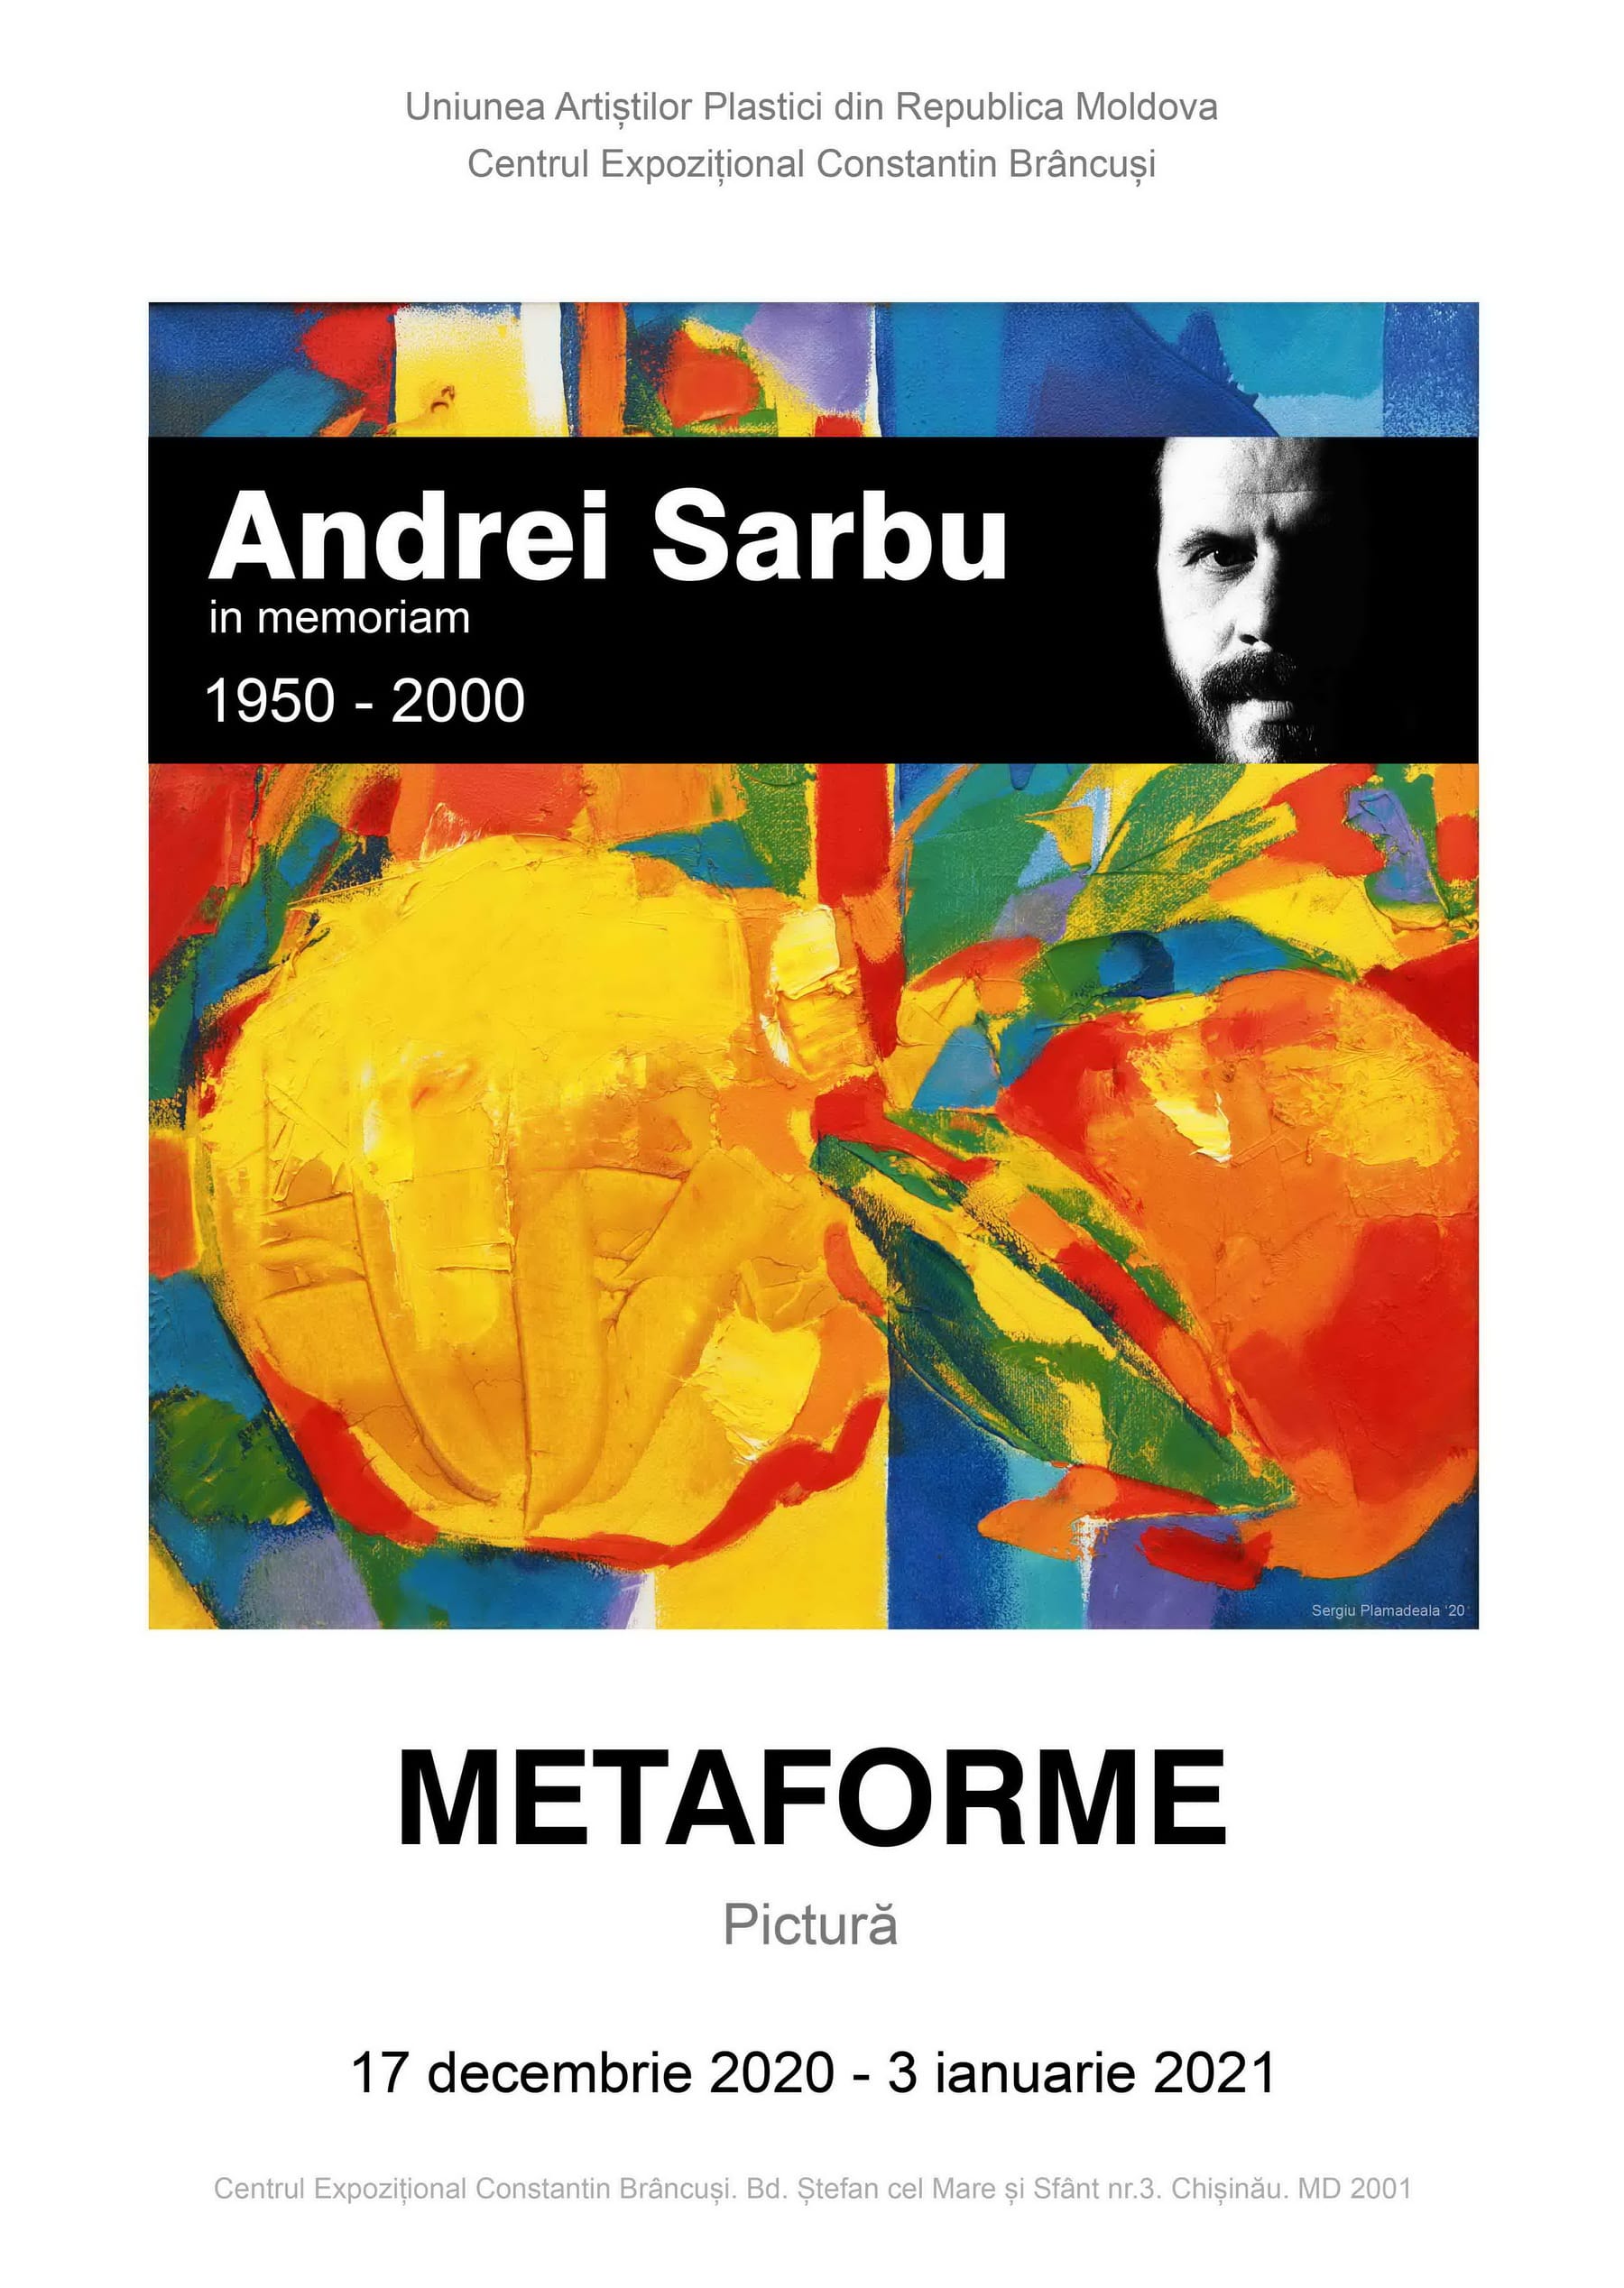 Andrei Sârbu 1950-2000